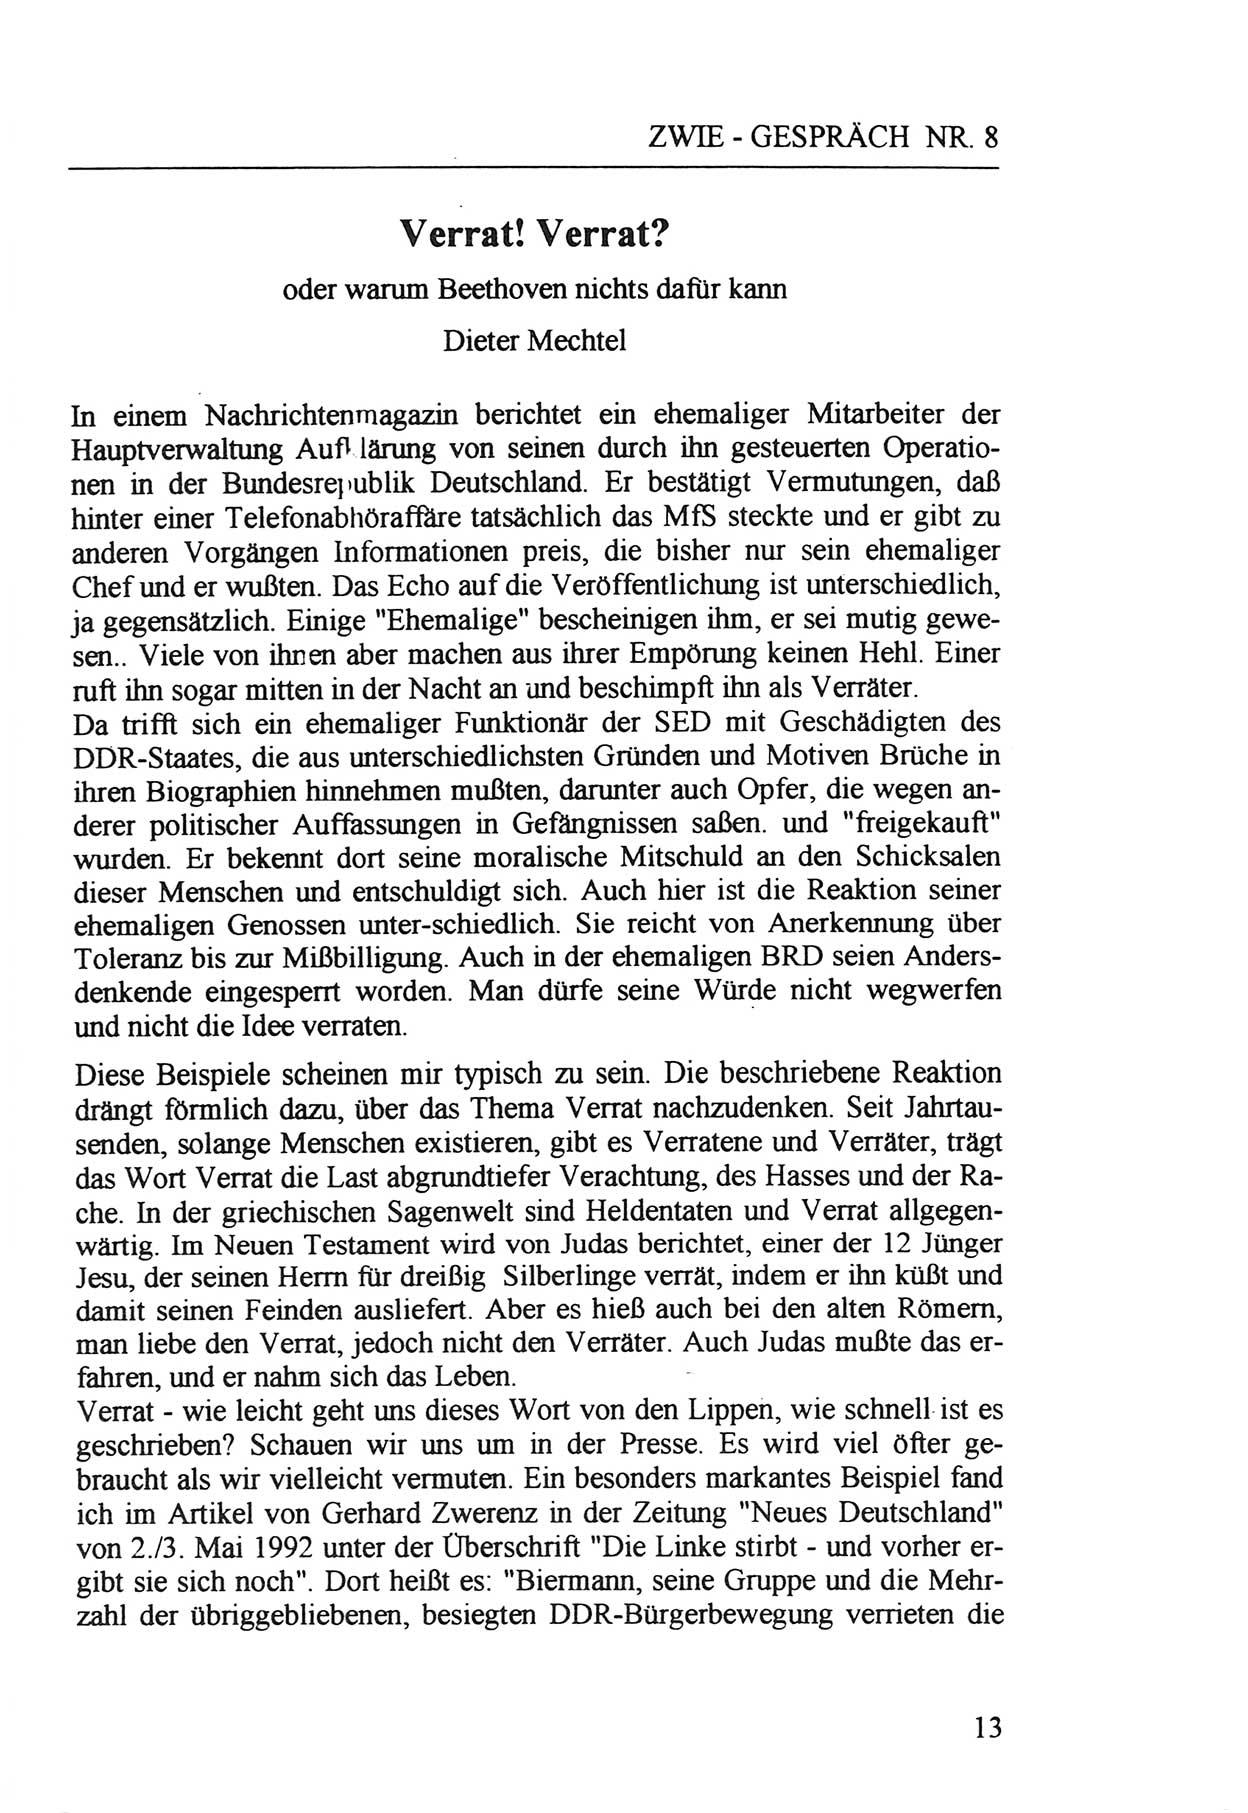 Zwie-Gespräch, Beiträge zur Aufarbeitung der Staatssicherheits-Vergangenheit [Deutsche Demokratische Republik (DDR)], Ausgabe Nr. 8, Berlin 1992, Seite 13 (Zwie-Gespr. Ausg. 8 1992, S. 13)